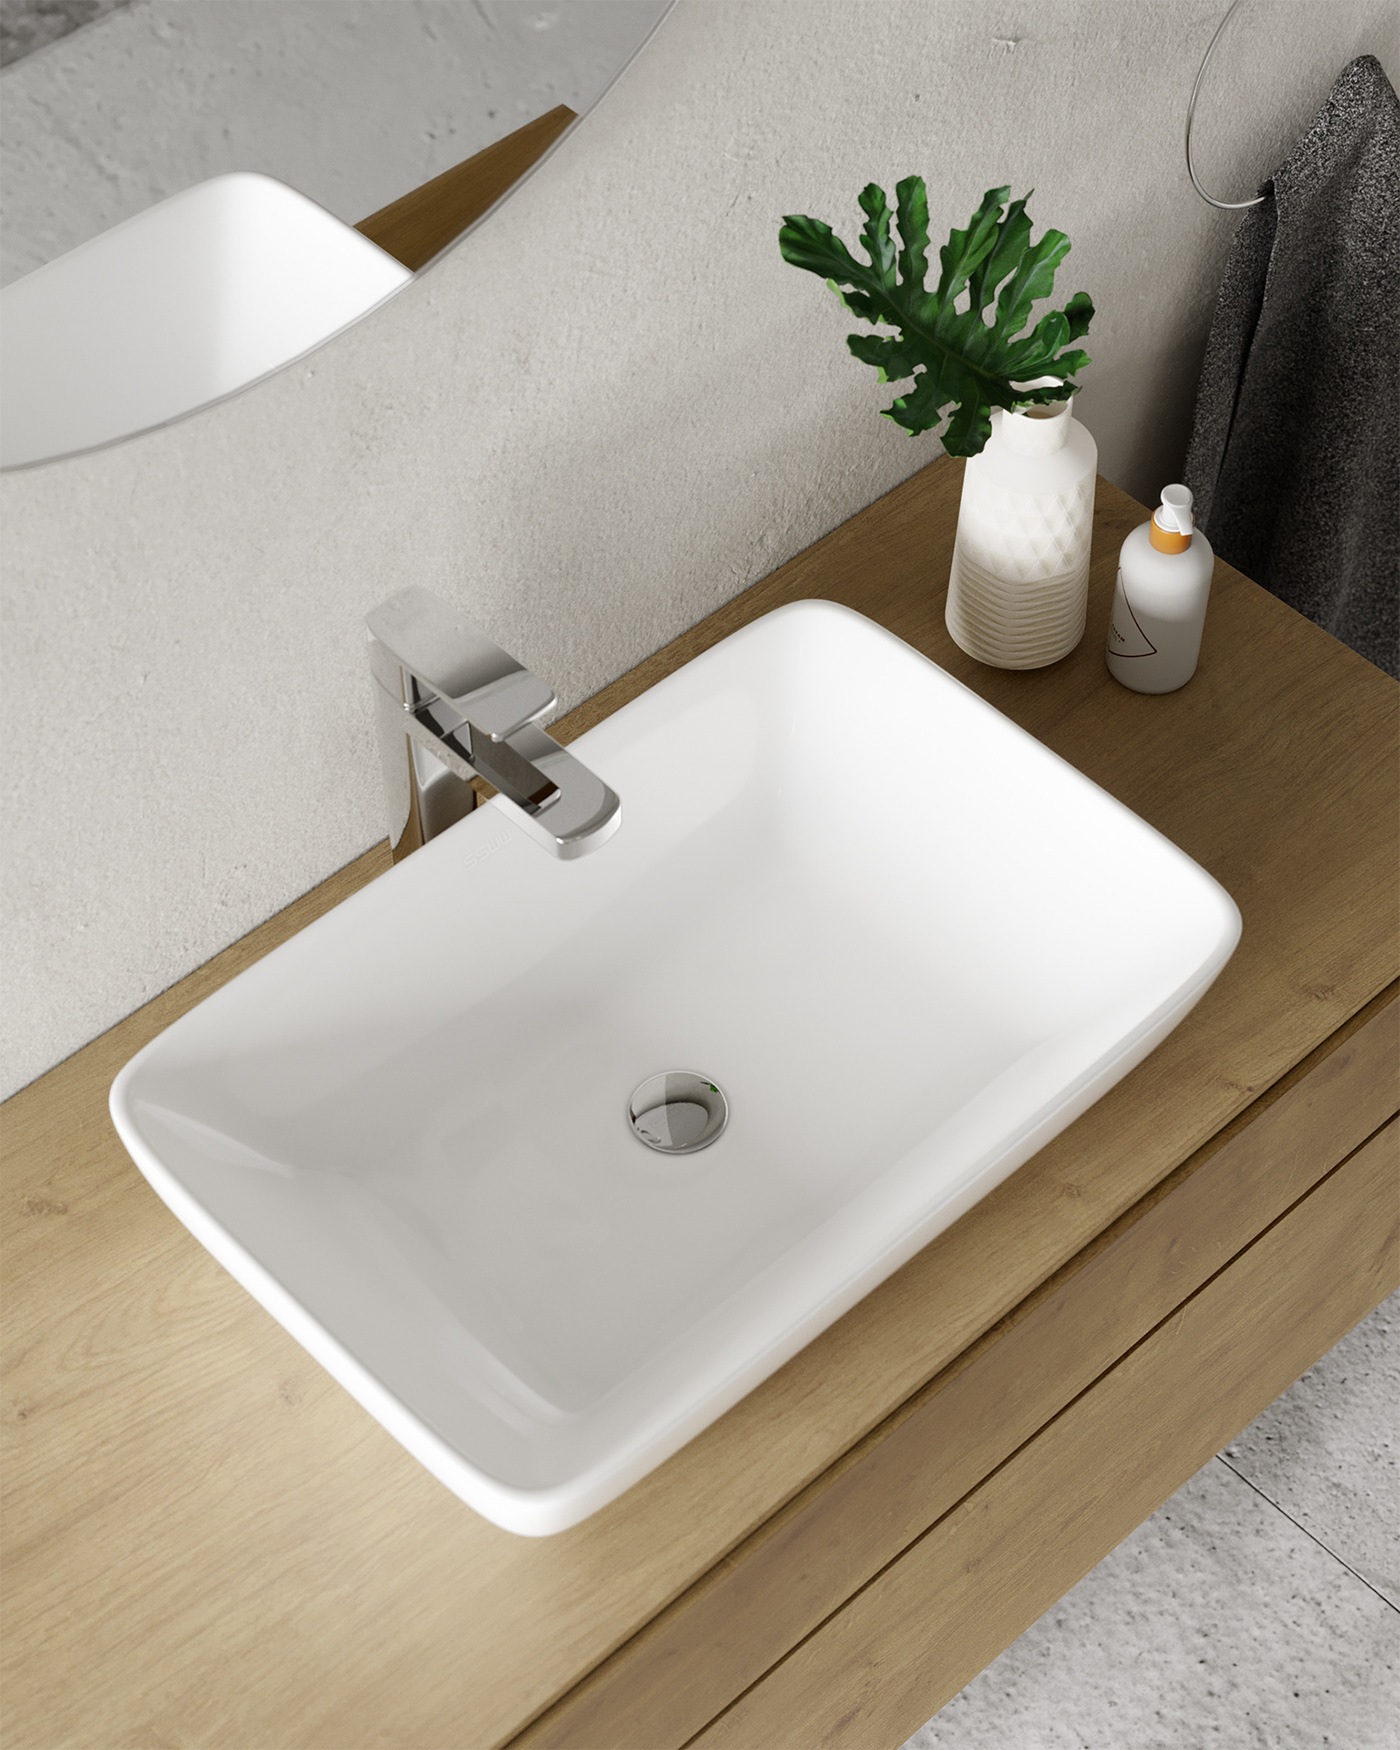 3dsmax archviz Badezimmer bathroom bathroomdesign CGI Innenarchitektur Inneneinrichtung interior design  Raumgestaltung